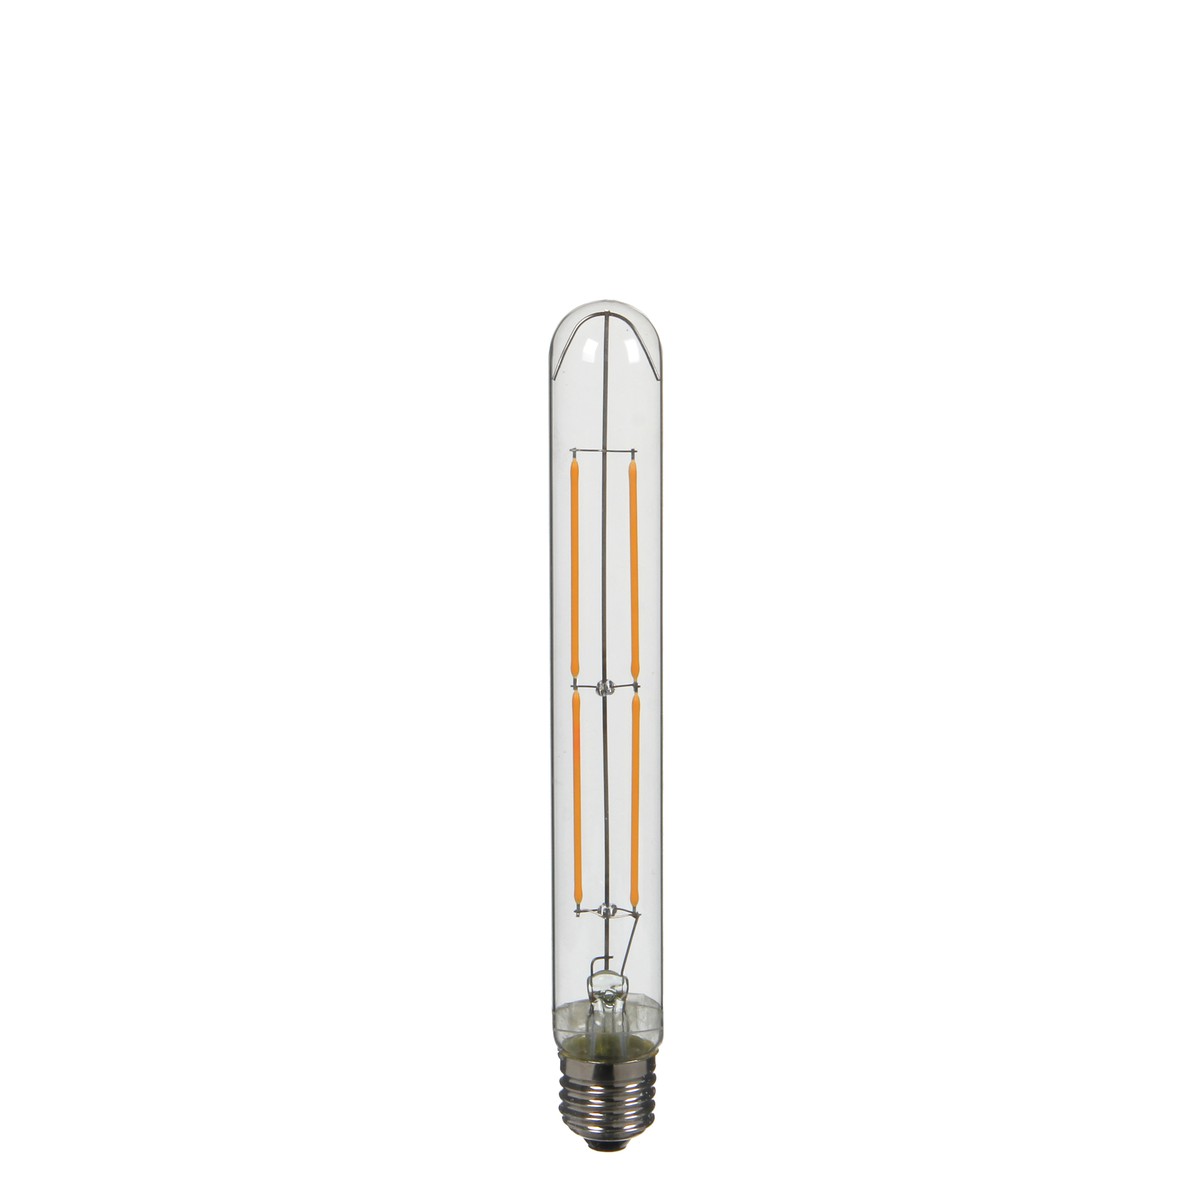   Ampoule filament tube halogène dimmable 4W-E27-2200K-300LM - h23xd3cm  h23xd3cm 4W-E27-2200K-300LM